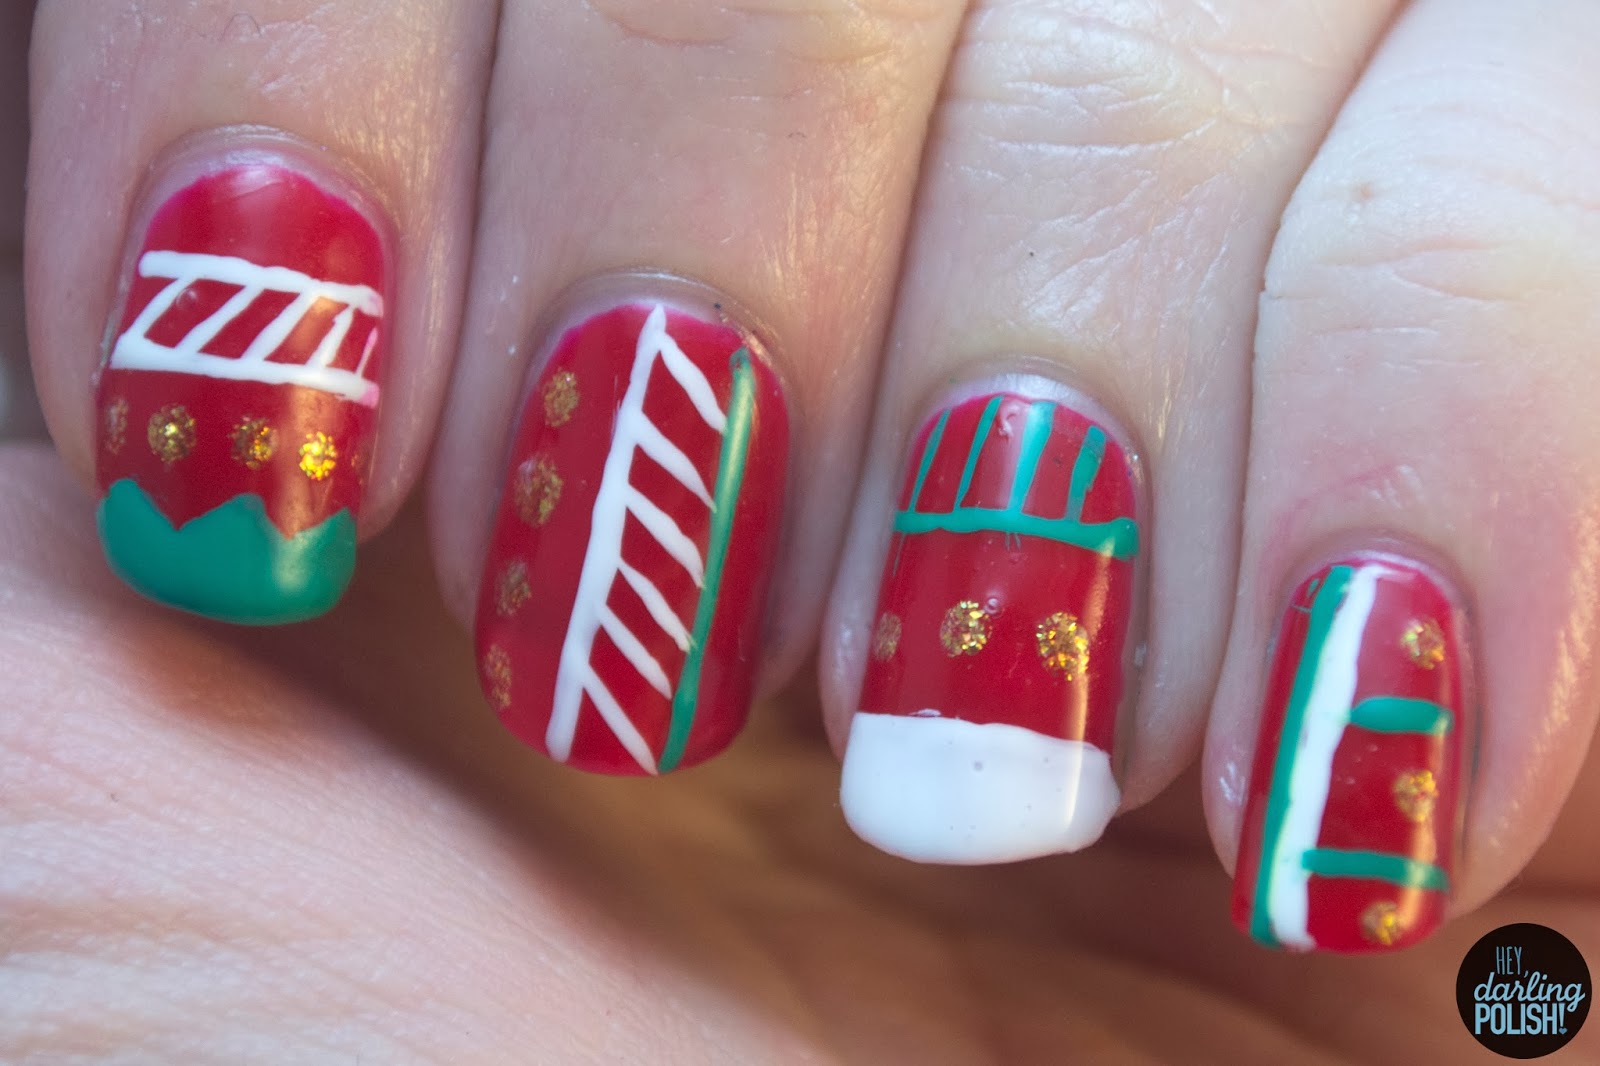 Hey, Darling Polish!: Christmas Nails: Tribal